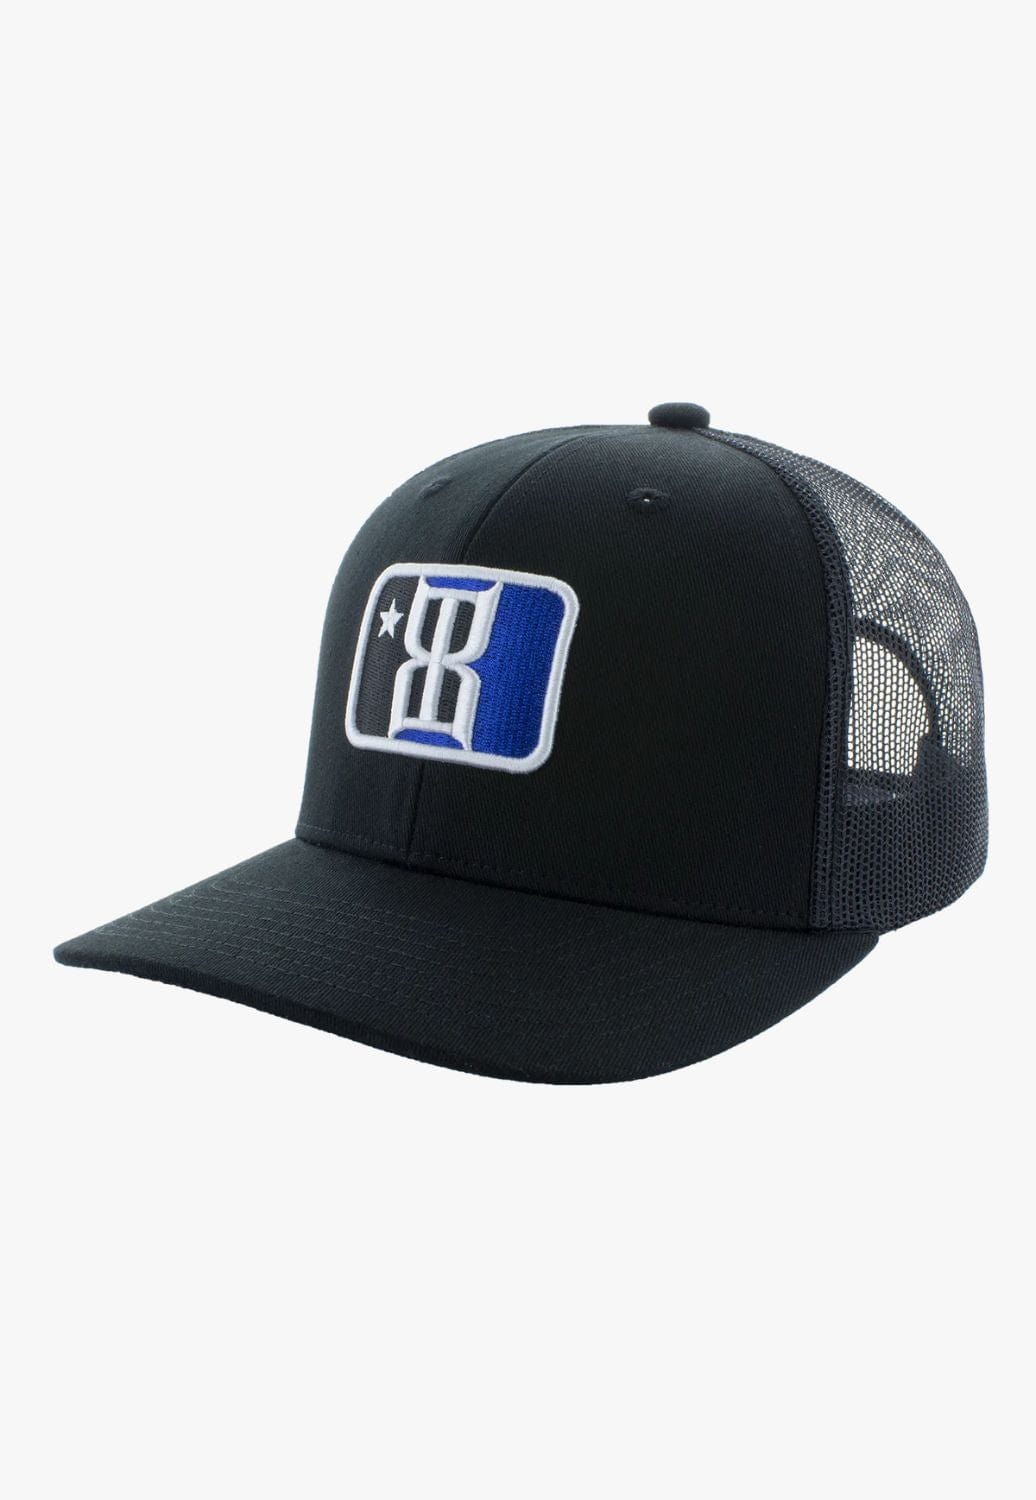 BEX HATS - Caps Black/Blue Bex Local Cap